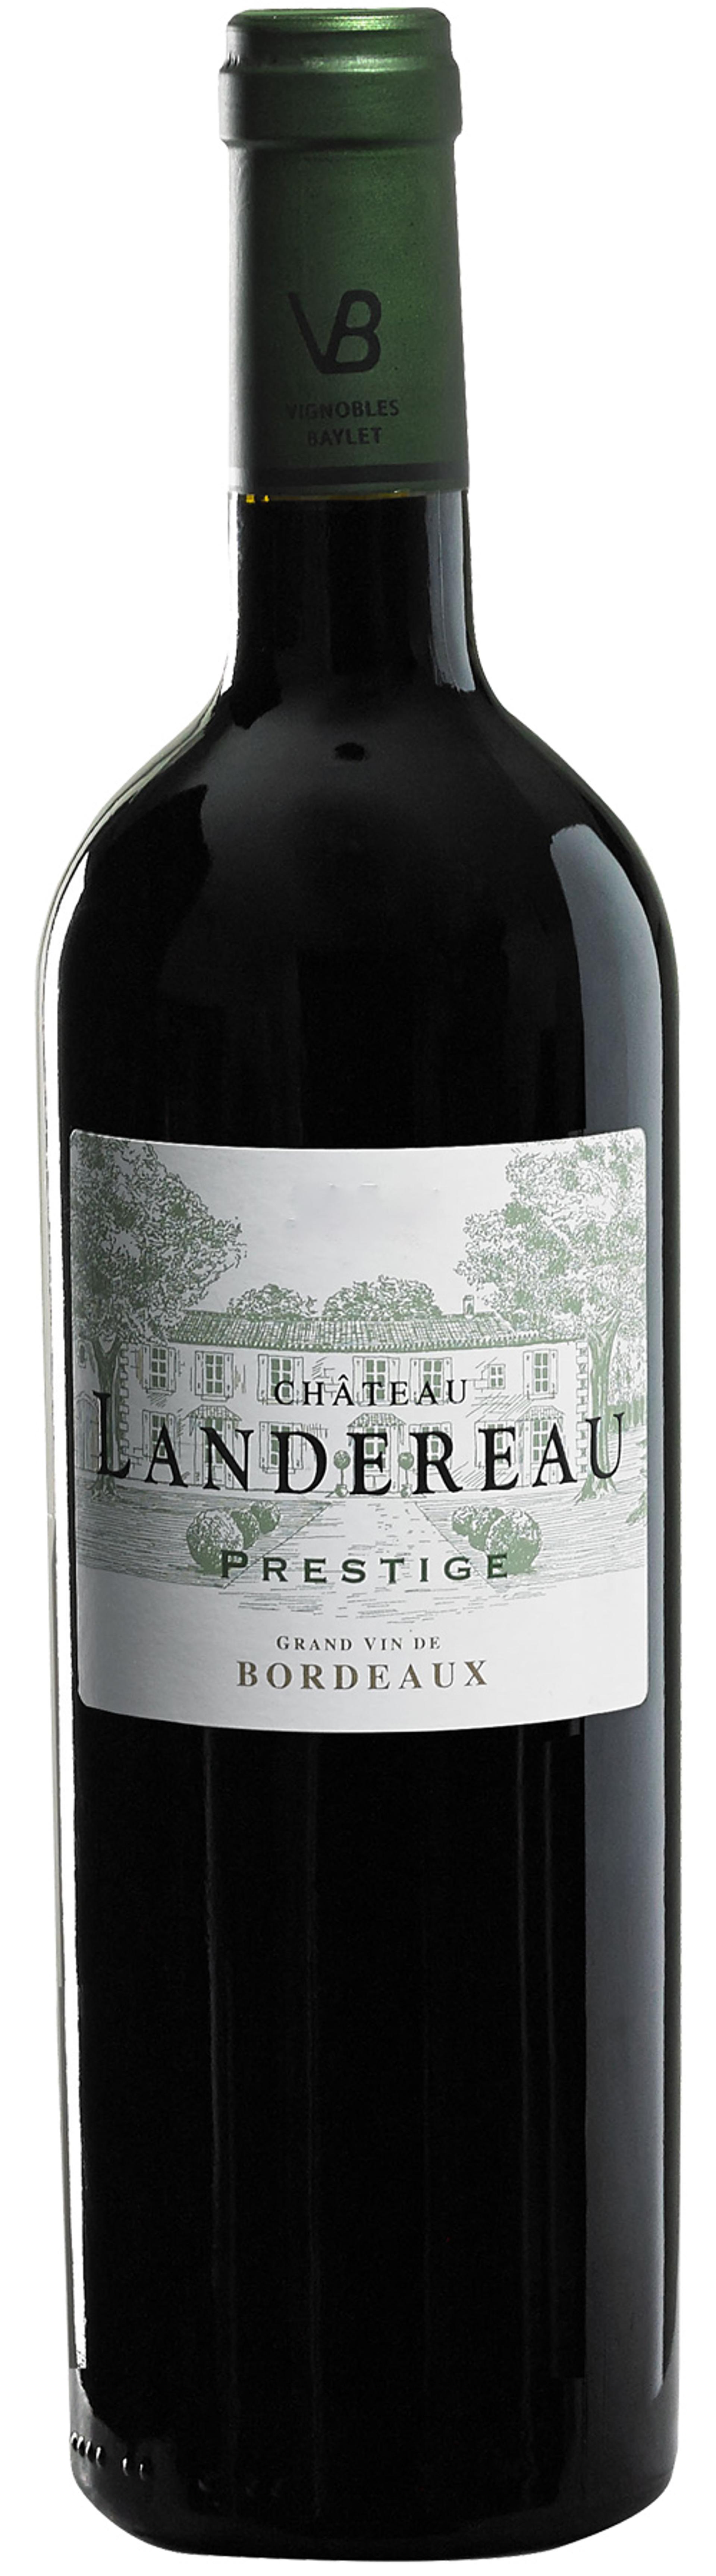 Château Landereau Prestige